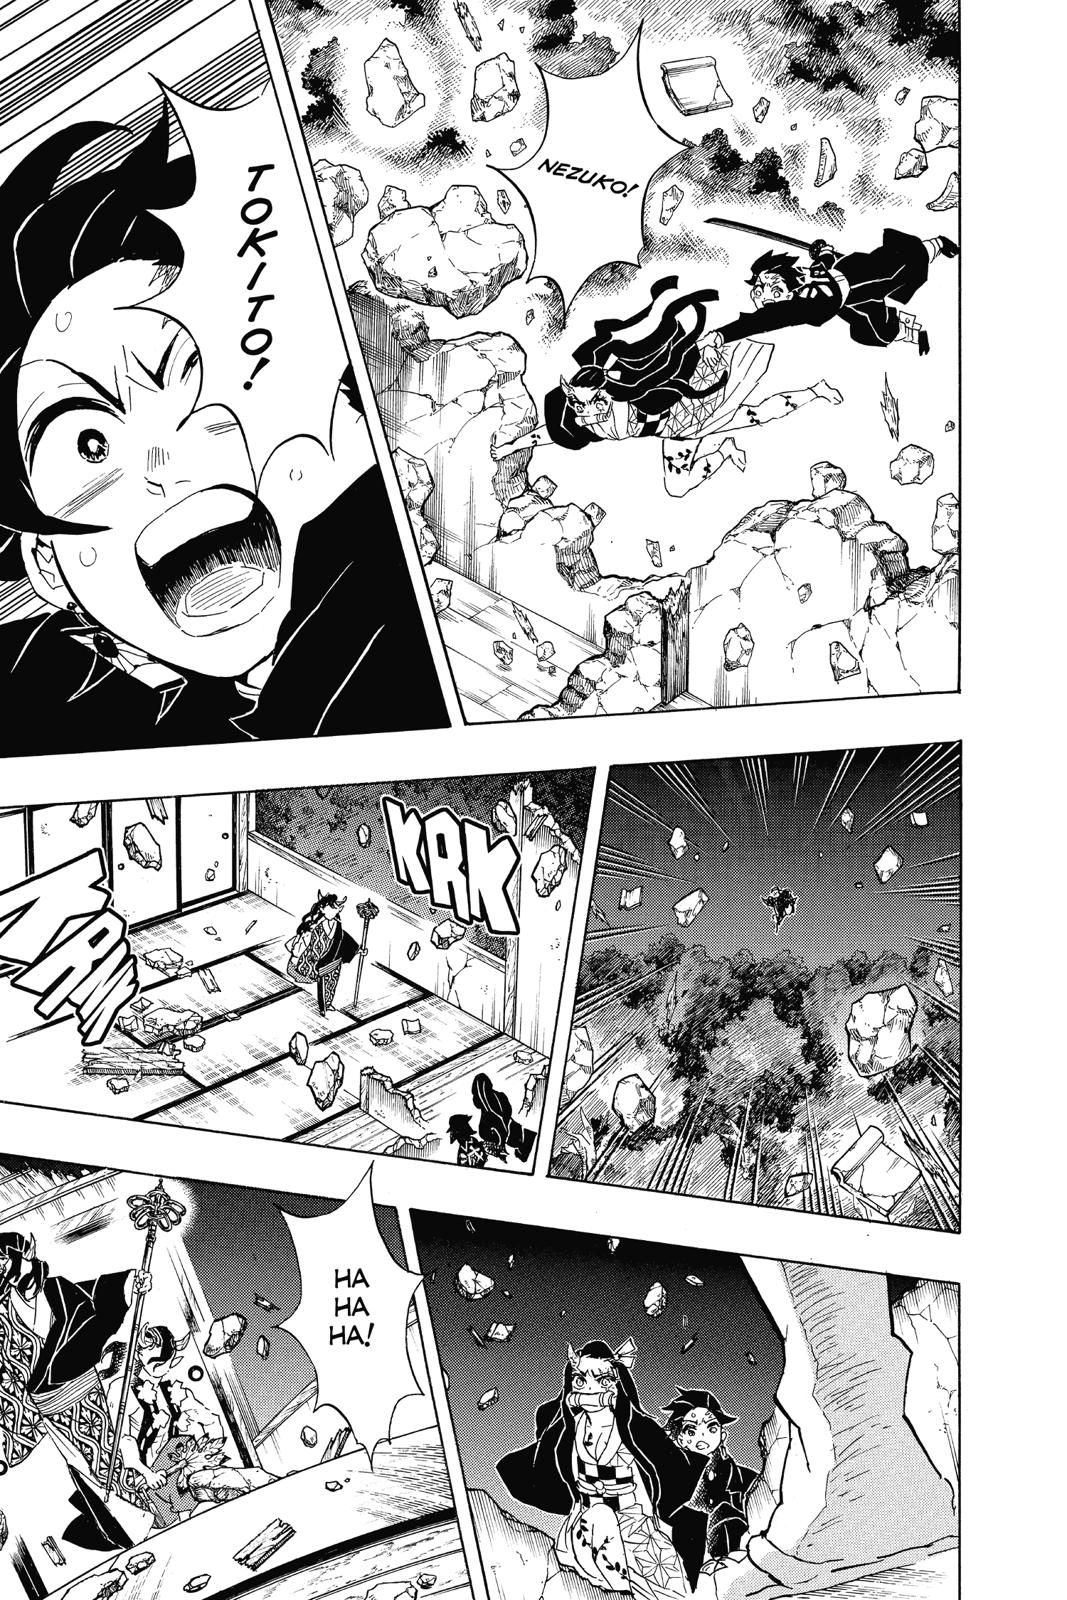 Demon Slayer Manga Manga Chapter - 106 - image 15